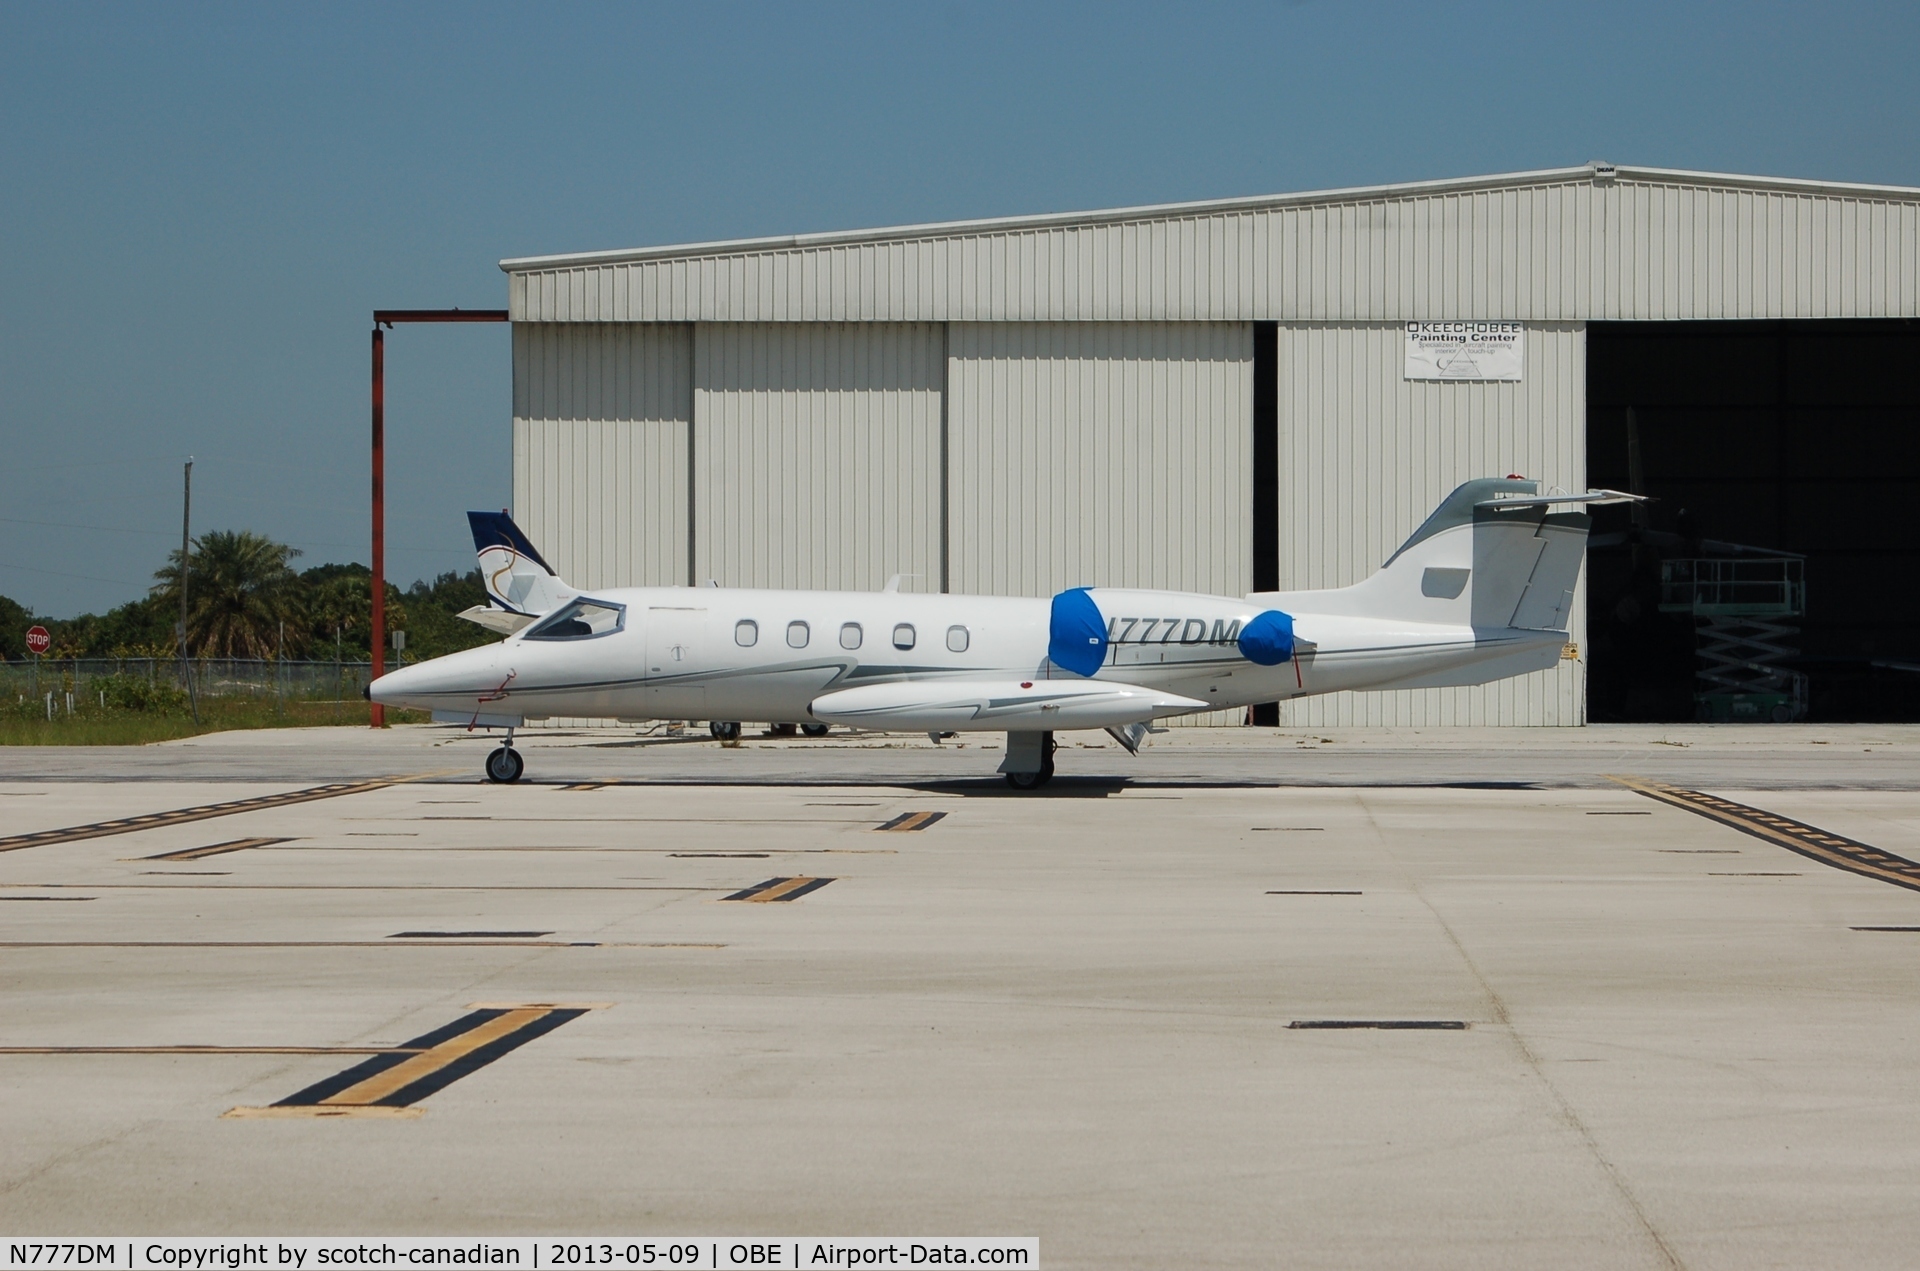 N777DM, Gates Learjet Corp. 35A C/N 297, Gates Learjet Corp. 35A, N777DM, at Okeechobee County Airport, Okeechobee, FL